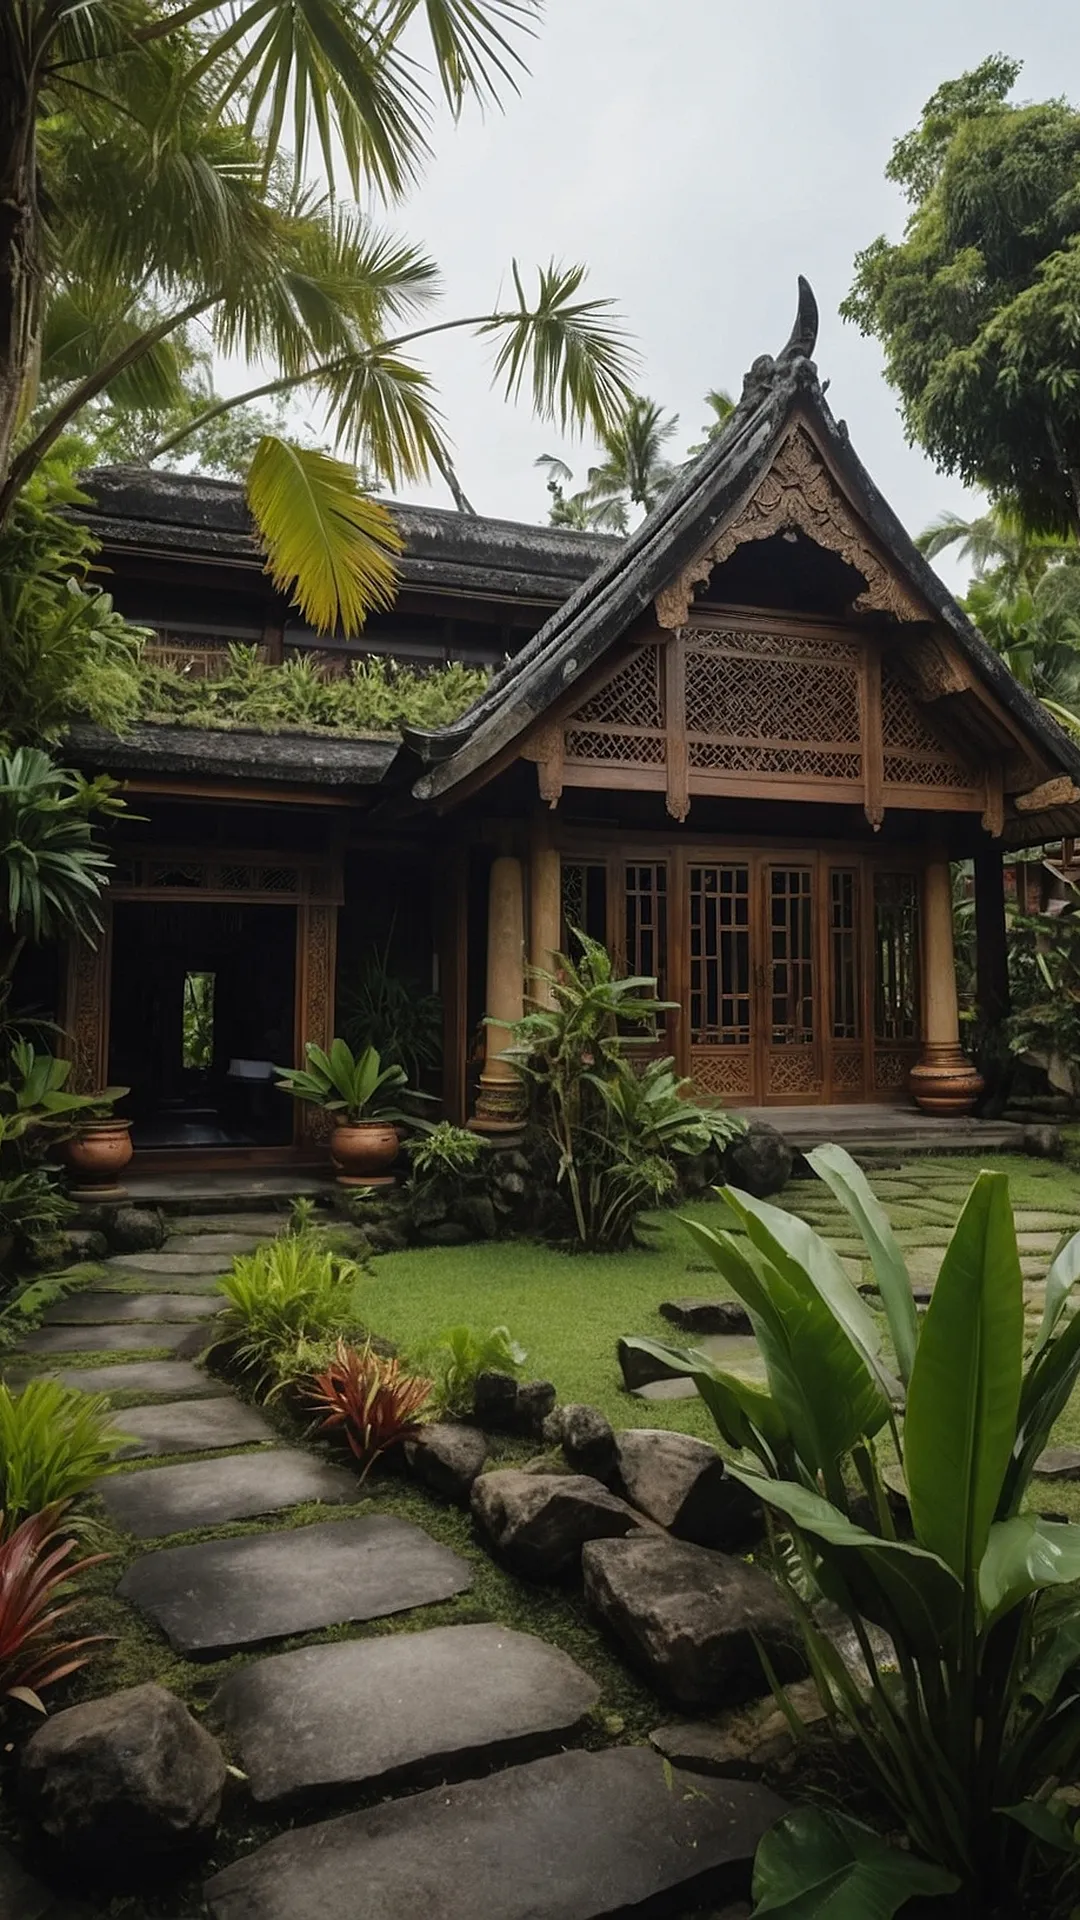 Serenity in Bloom: Balinese Garden Imagery